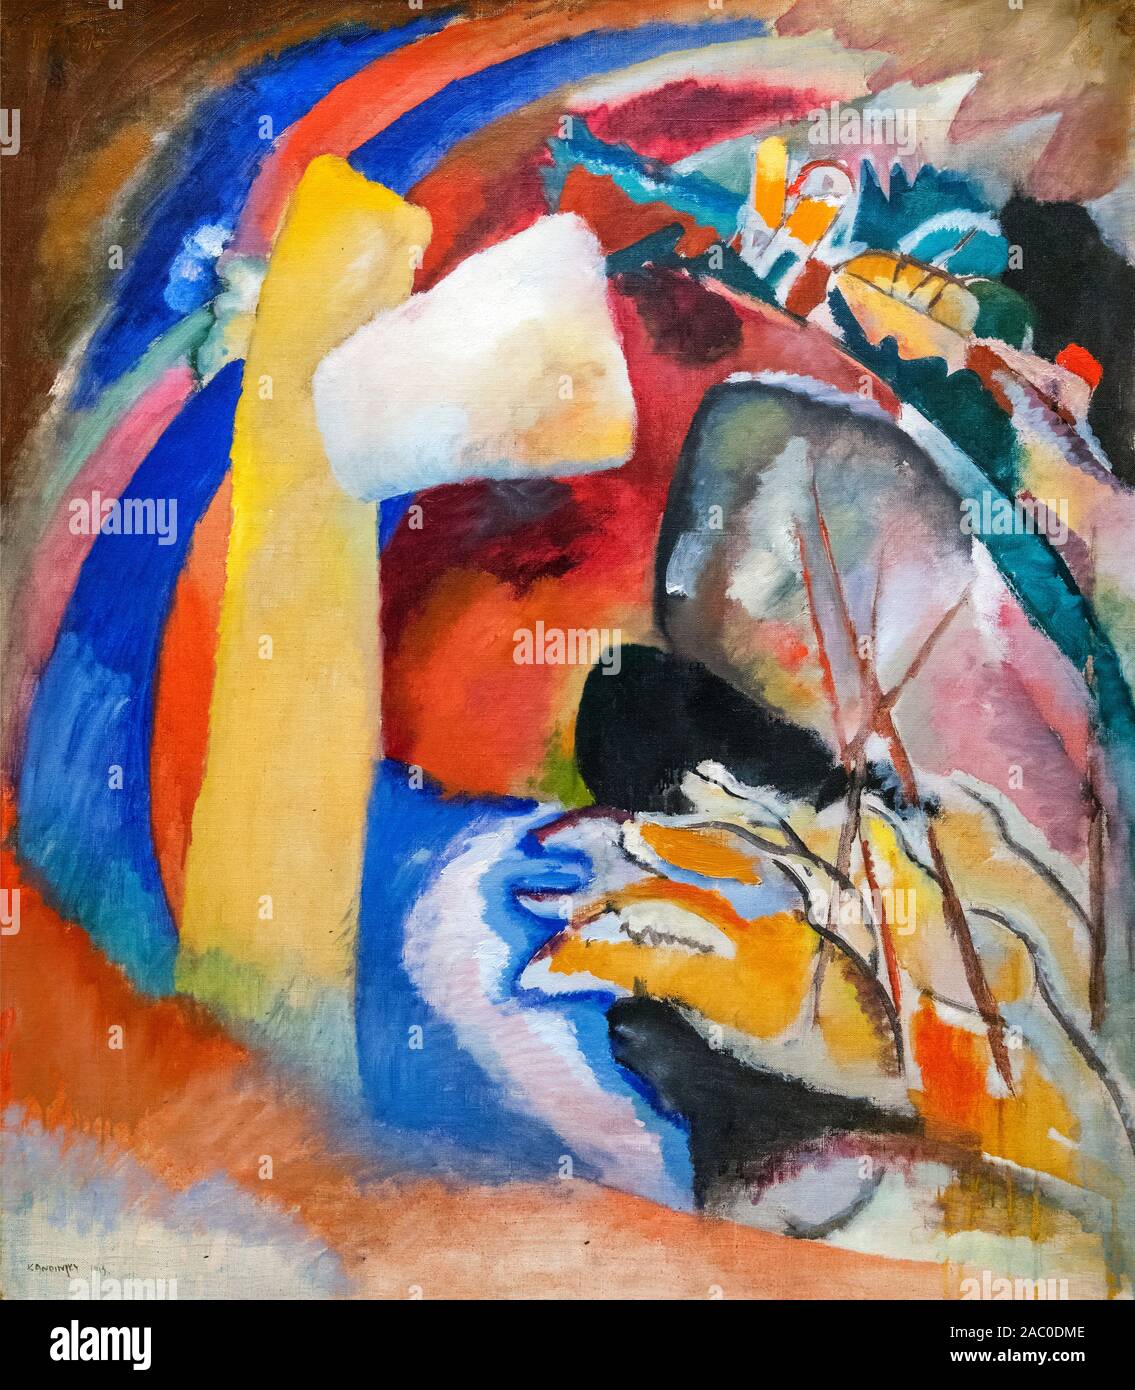 La peinture de Kandinsky. Etude pour l'art de la peinture avec forme blanche par Vassily Kandinsky (1866-1944), huile sur toile, 1913 Banque D'Images